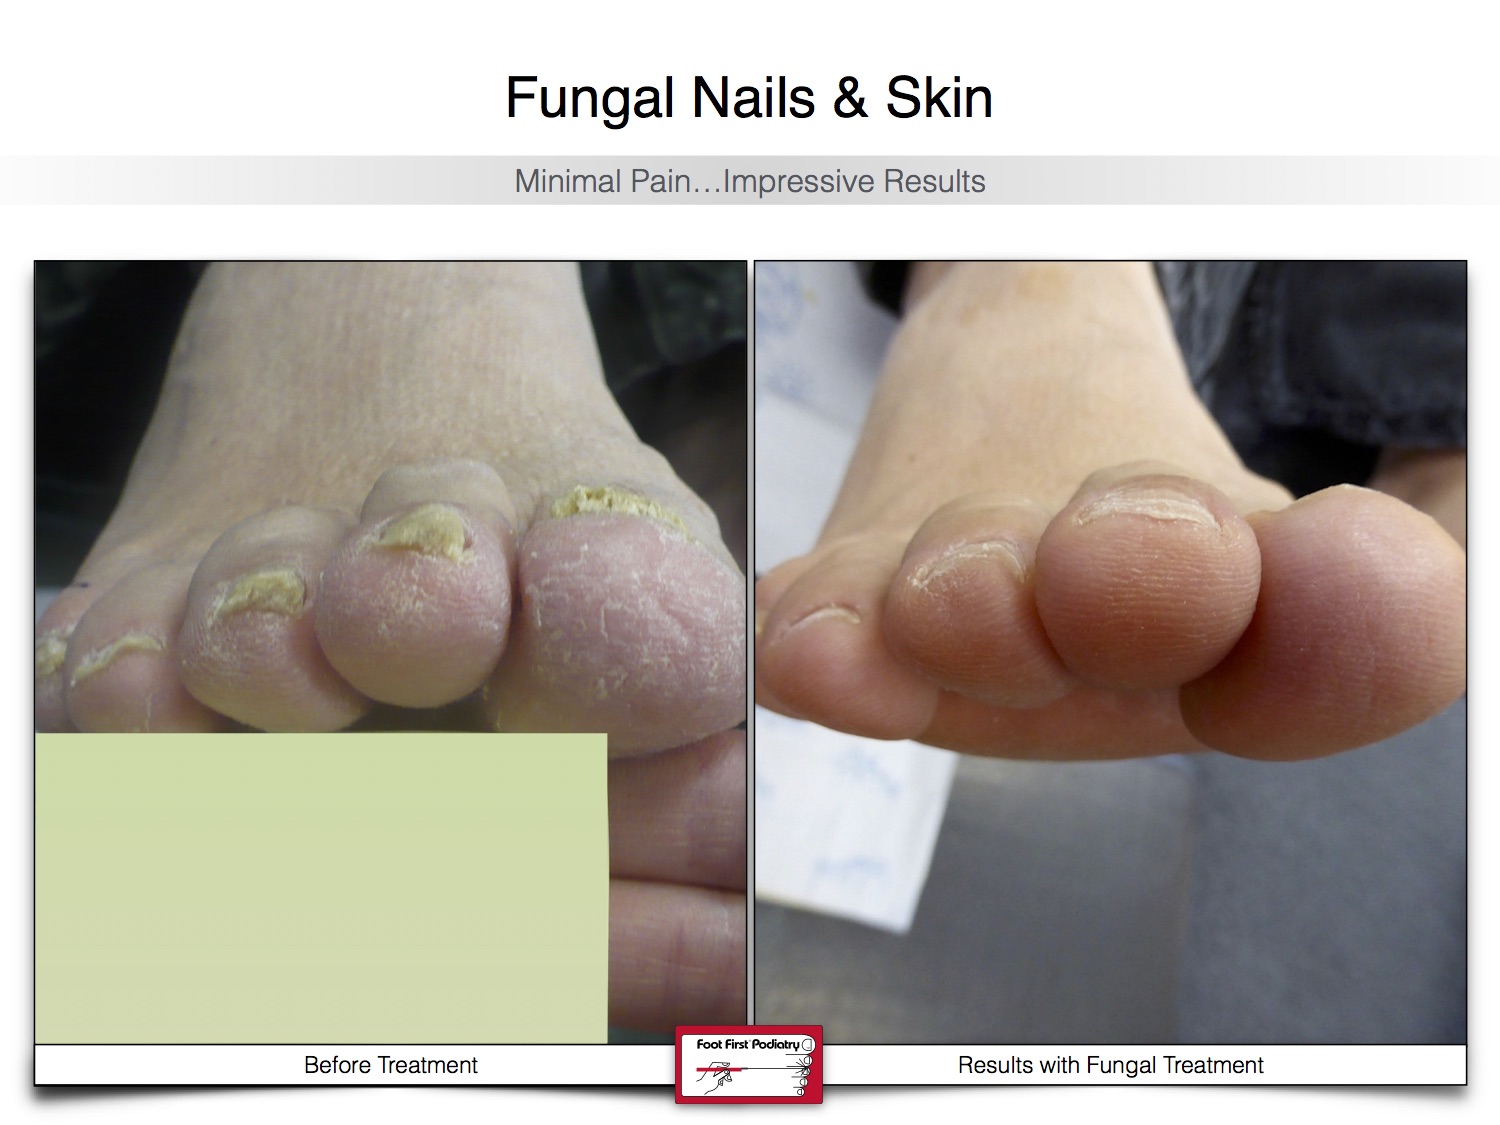 Fungal Nails & Skin 02.16 22.jpg